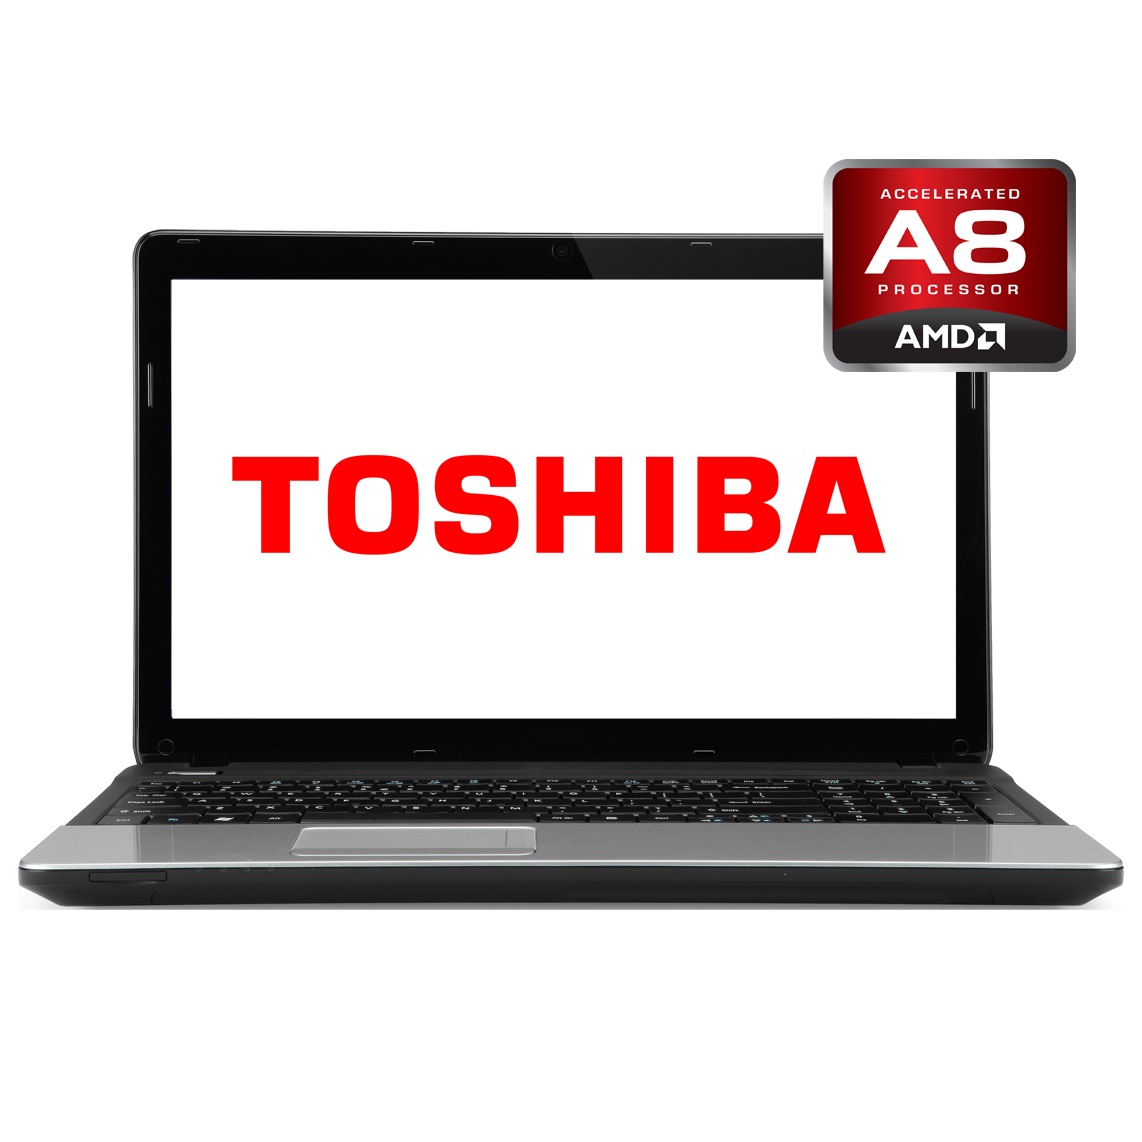 Toshiba - 16 inch AMD A8